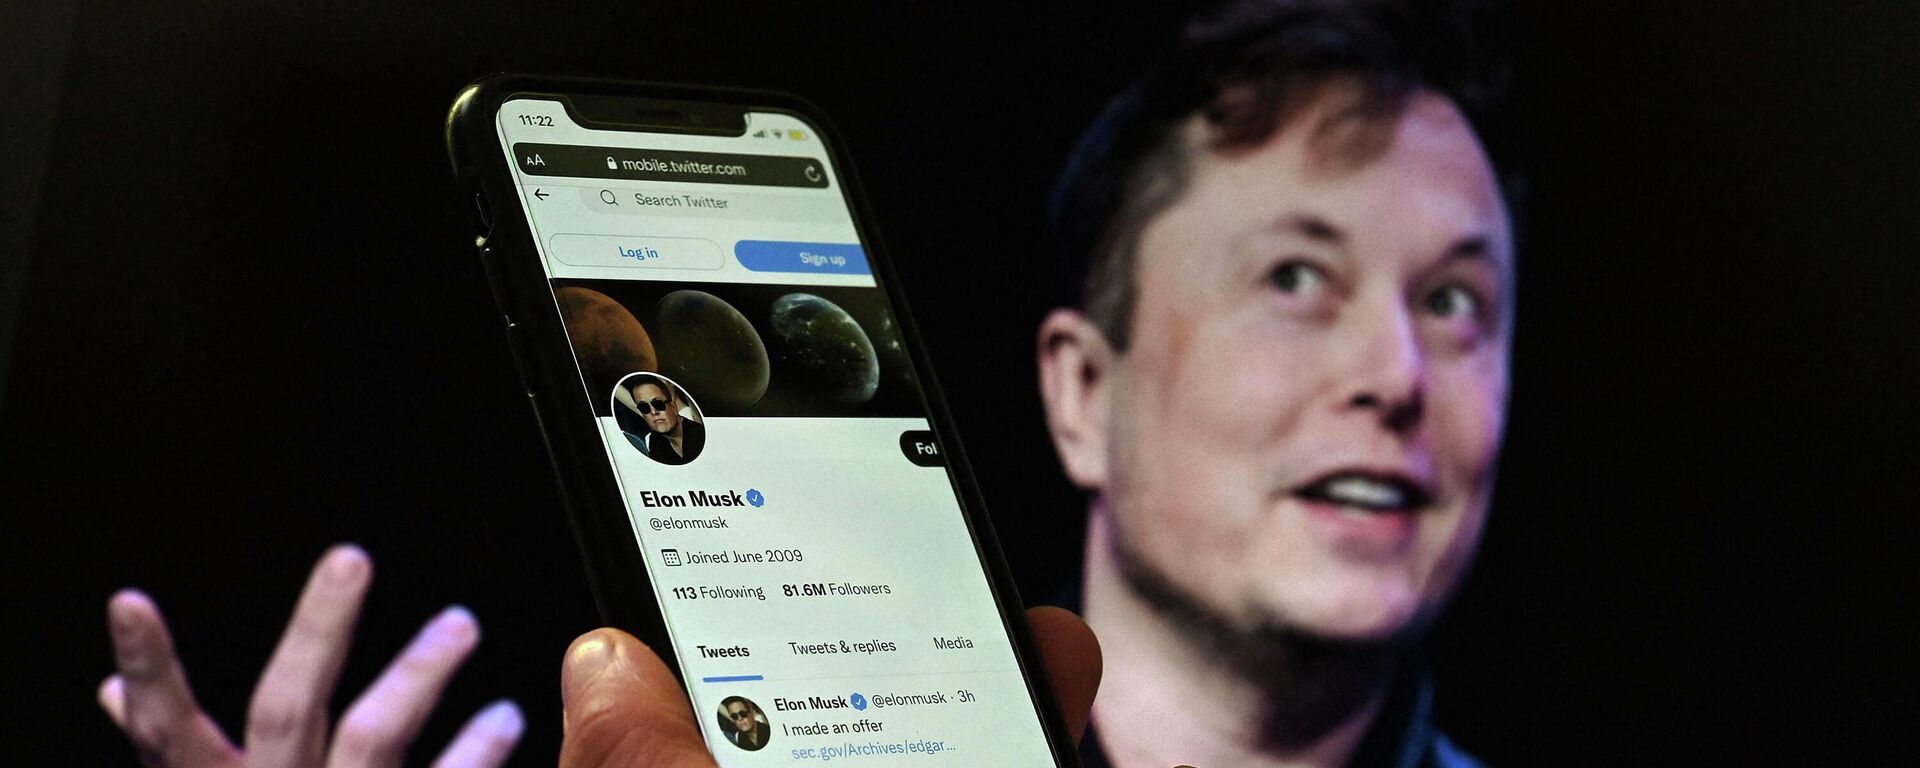 Elon Musk, el hombre más rico del mundo que quiere comprar Twitter - Sputnik Mundo, 1920, 24.10.2022